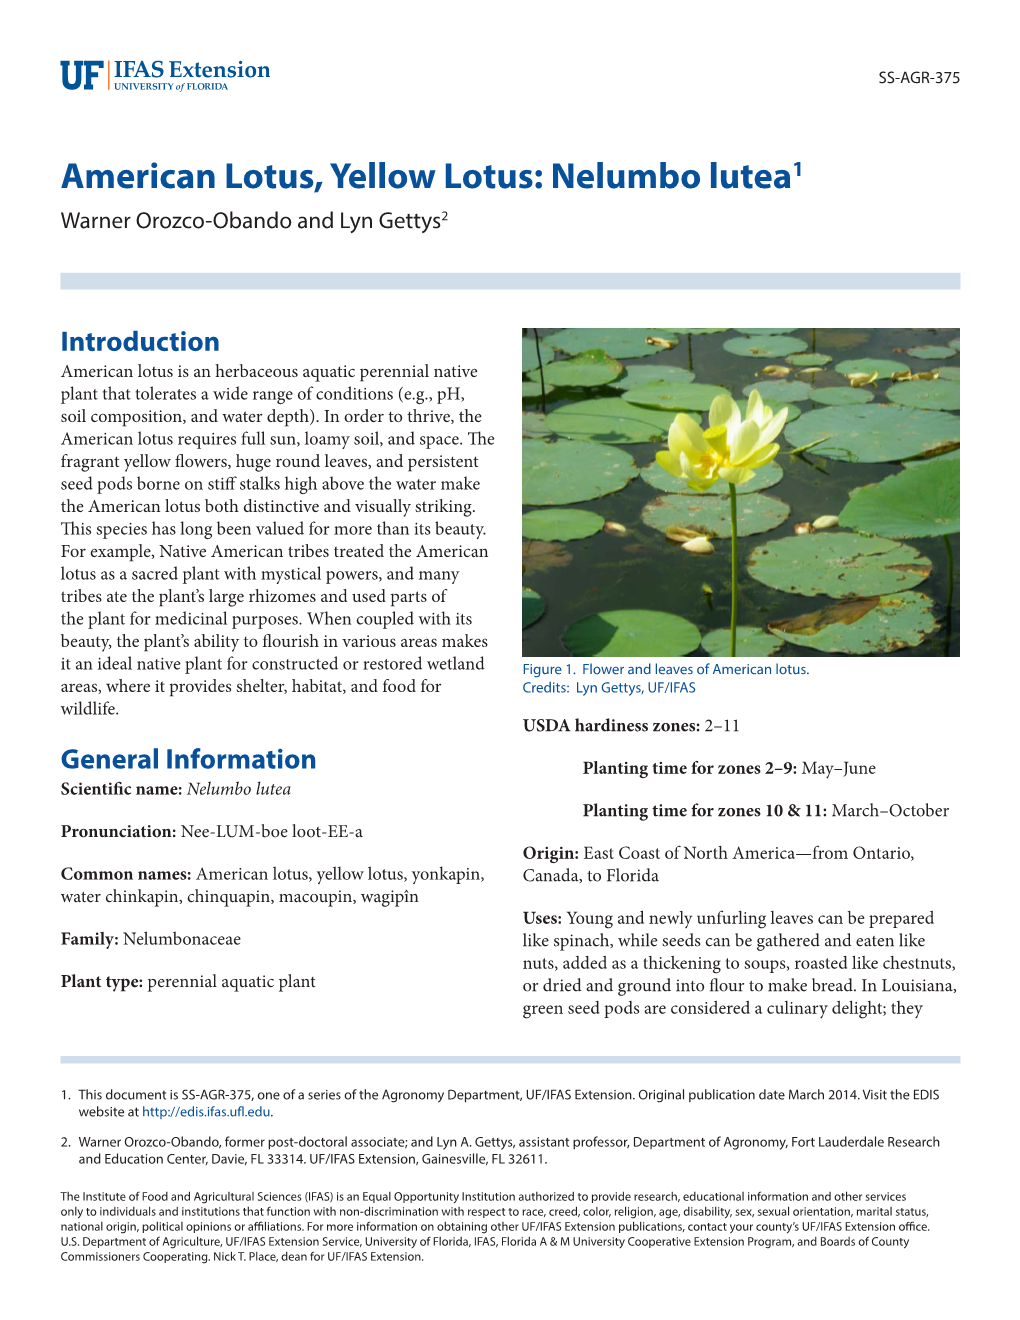 American Lotus, Yellow Lotus: Nelumbo Lutea1 Warner Orozco-Obando and Lyn Gettys2